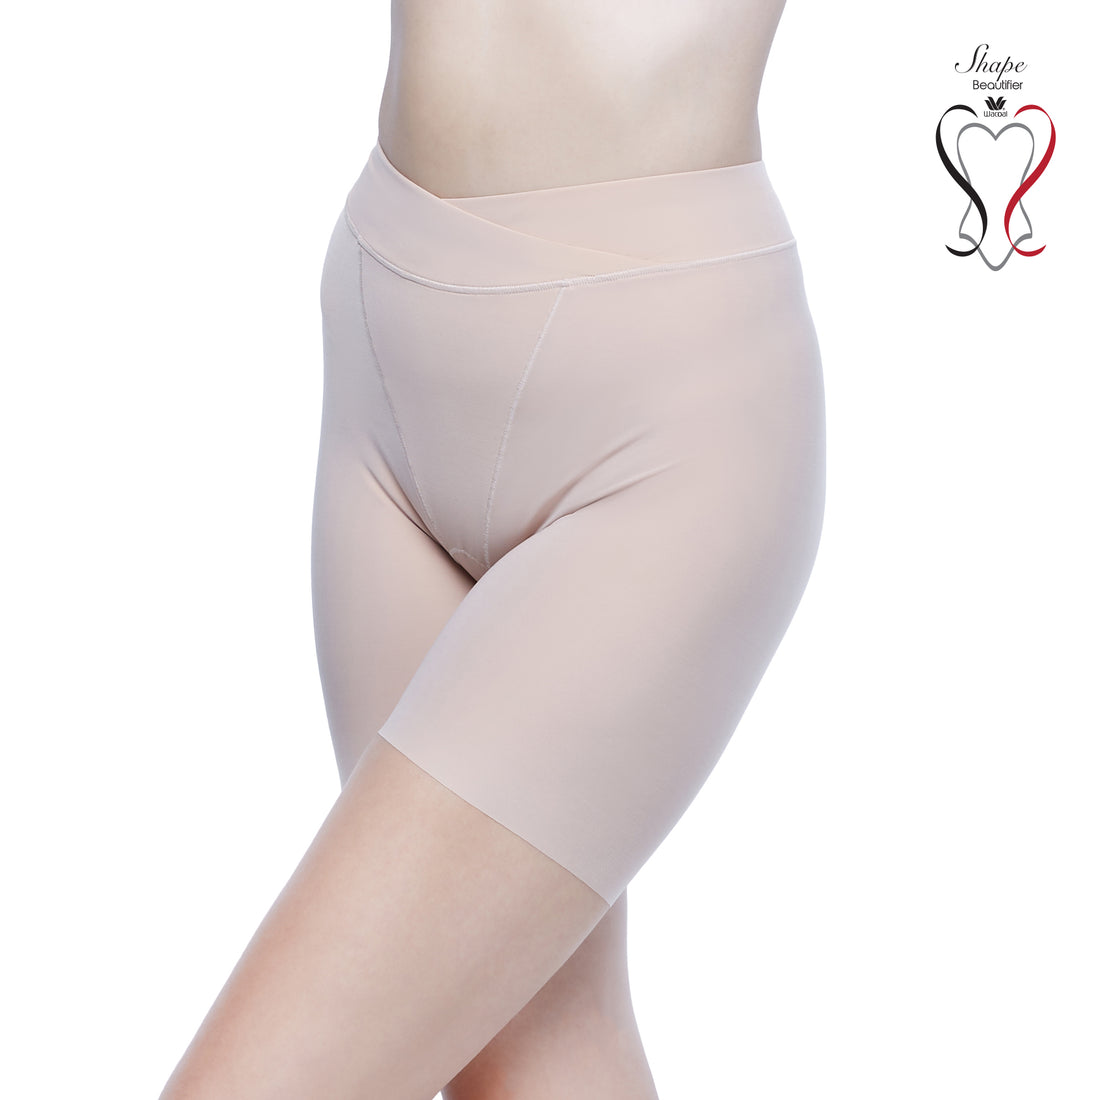 Wacoal Shape Beautifier Hip Tightening Pants Model WY1182 Beige (BE)